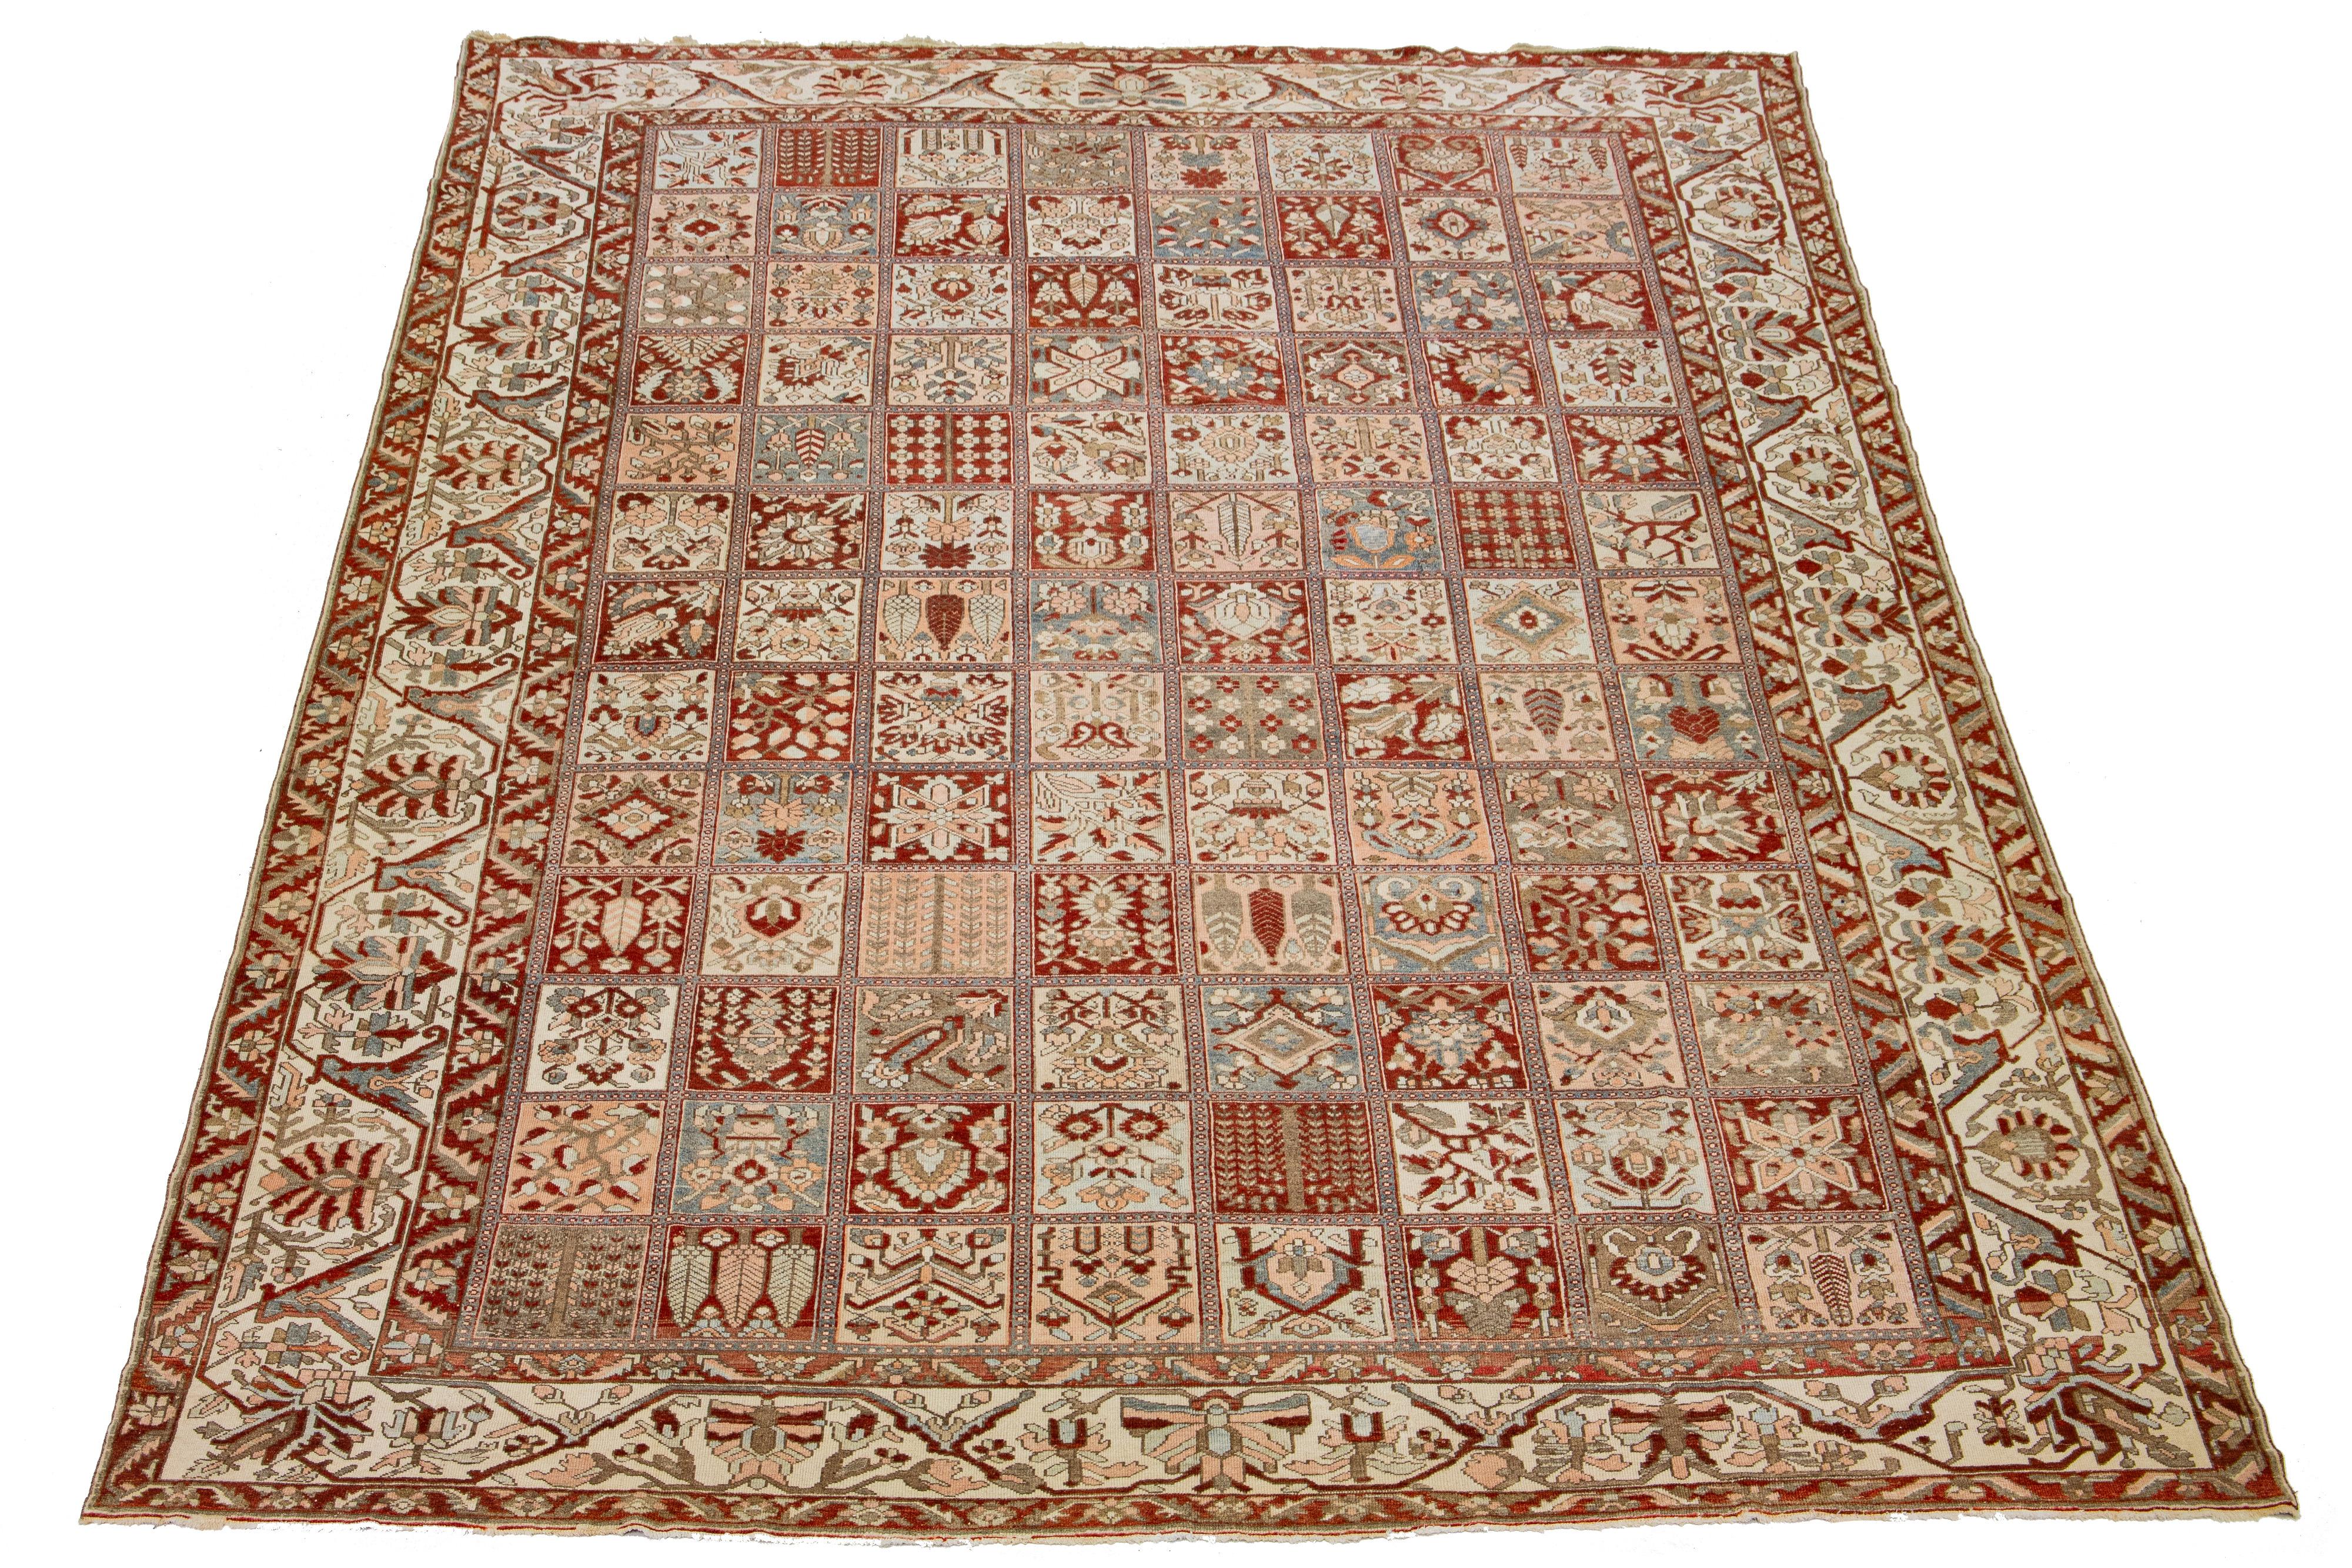 Schöner antiker Bachtiari-Teppich aus handgeknüpfter Wolle mit einem rostroten, blauen, beigen und pfirsichfarbenen Farbfeld. Dieses persische Stück hat ein klassisches florales Muster.

Dieser Teppich misst 12'4